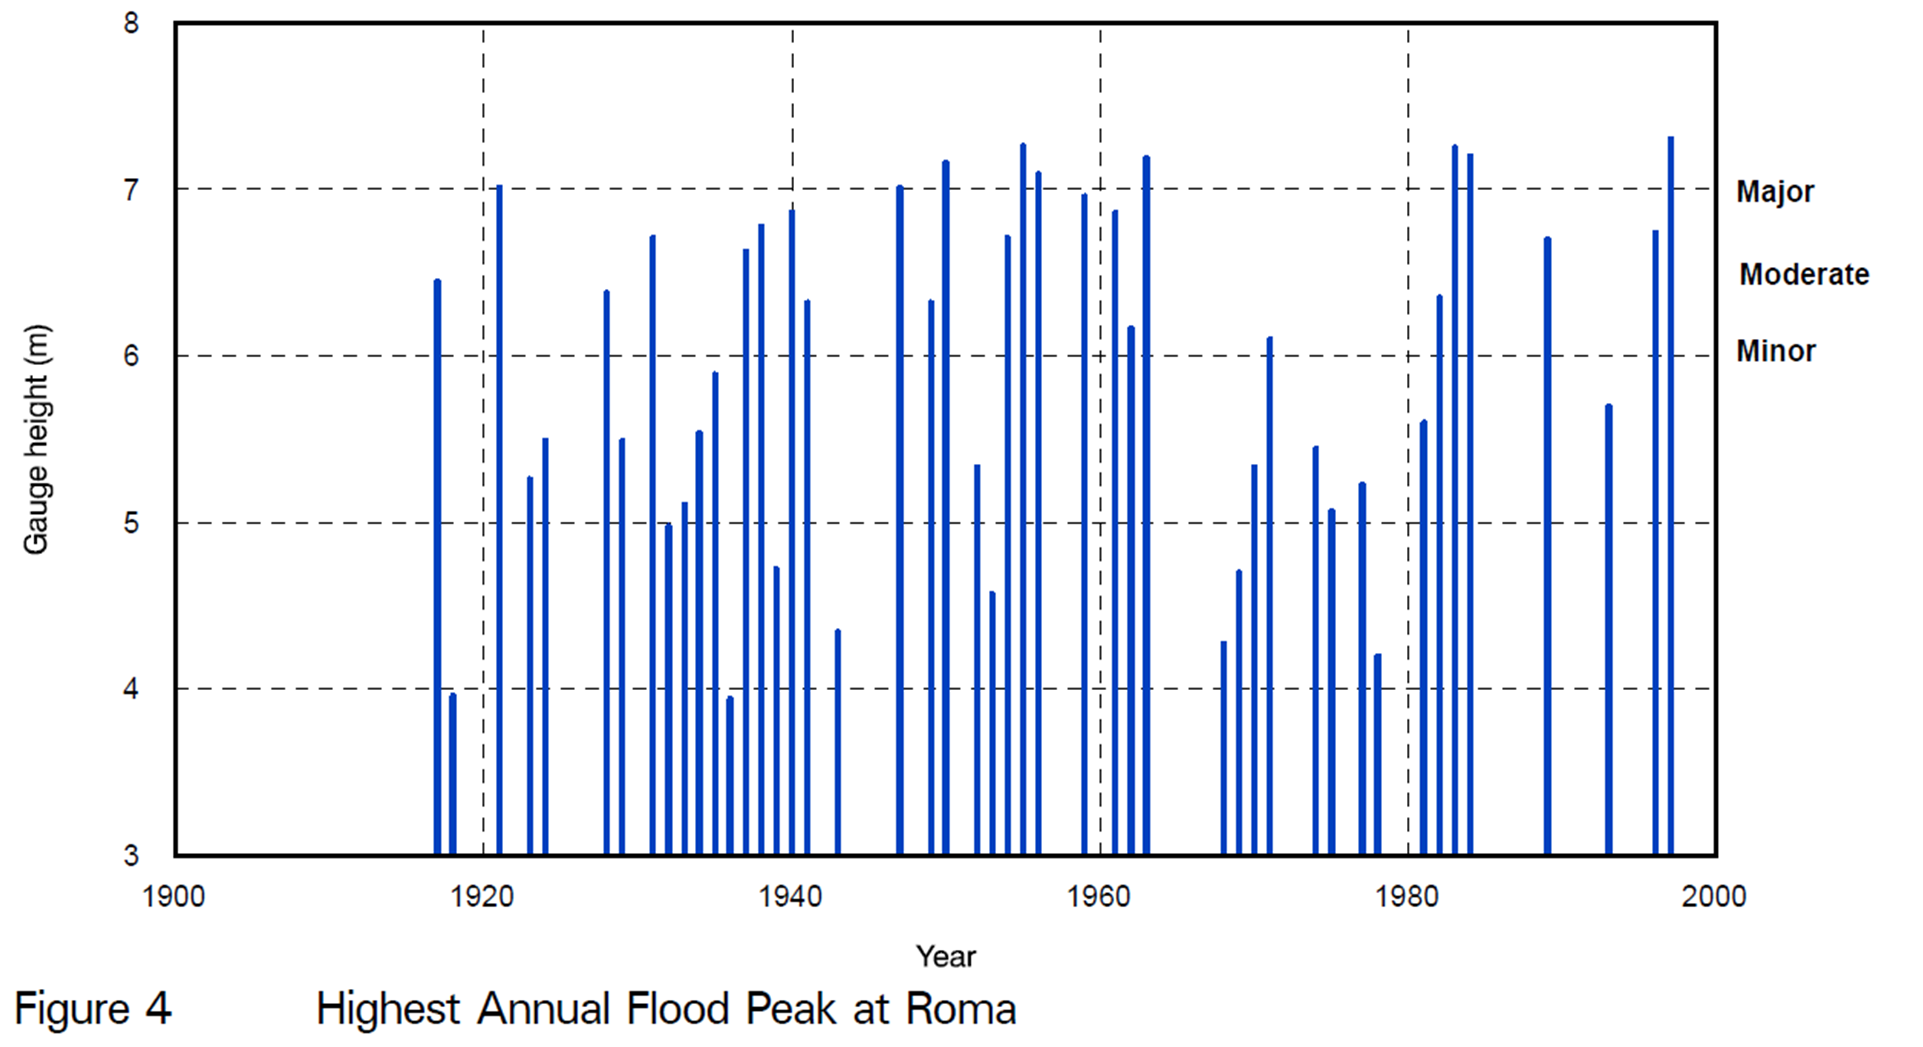 Highest Annual Flood Peak at Roma